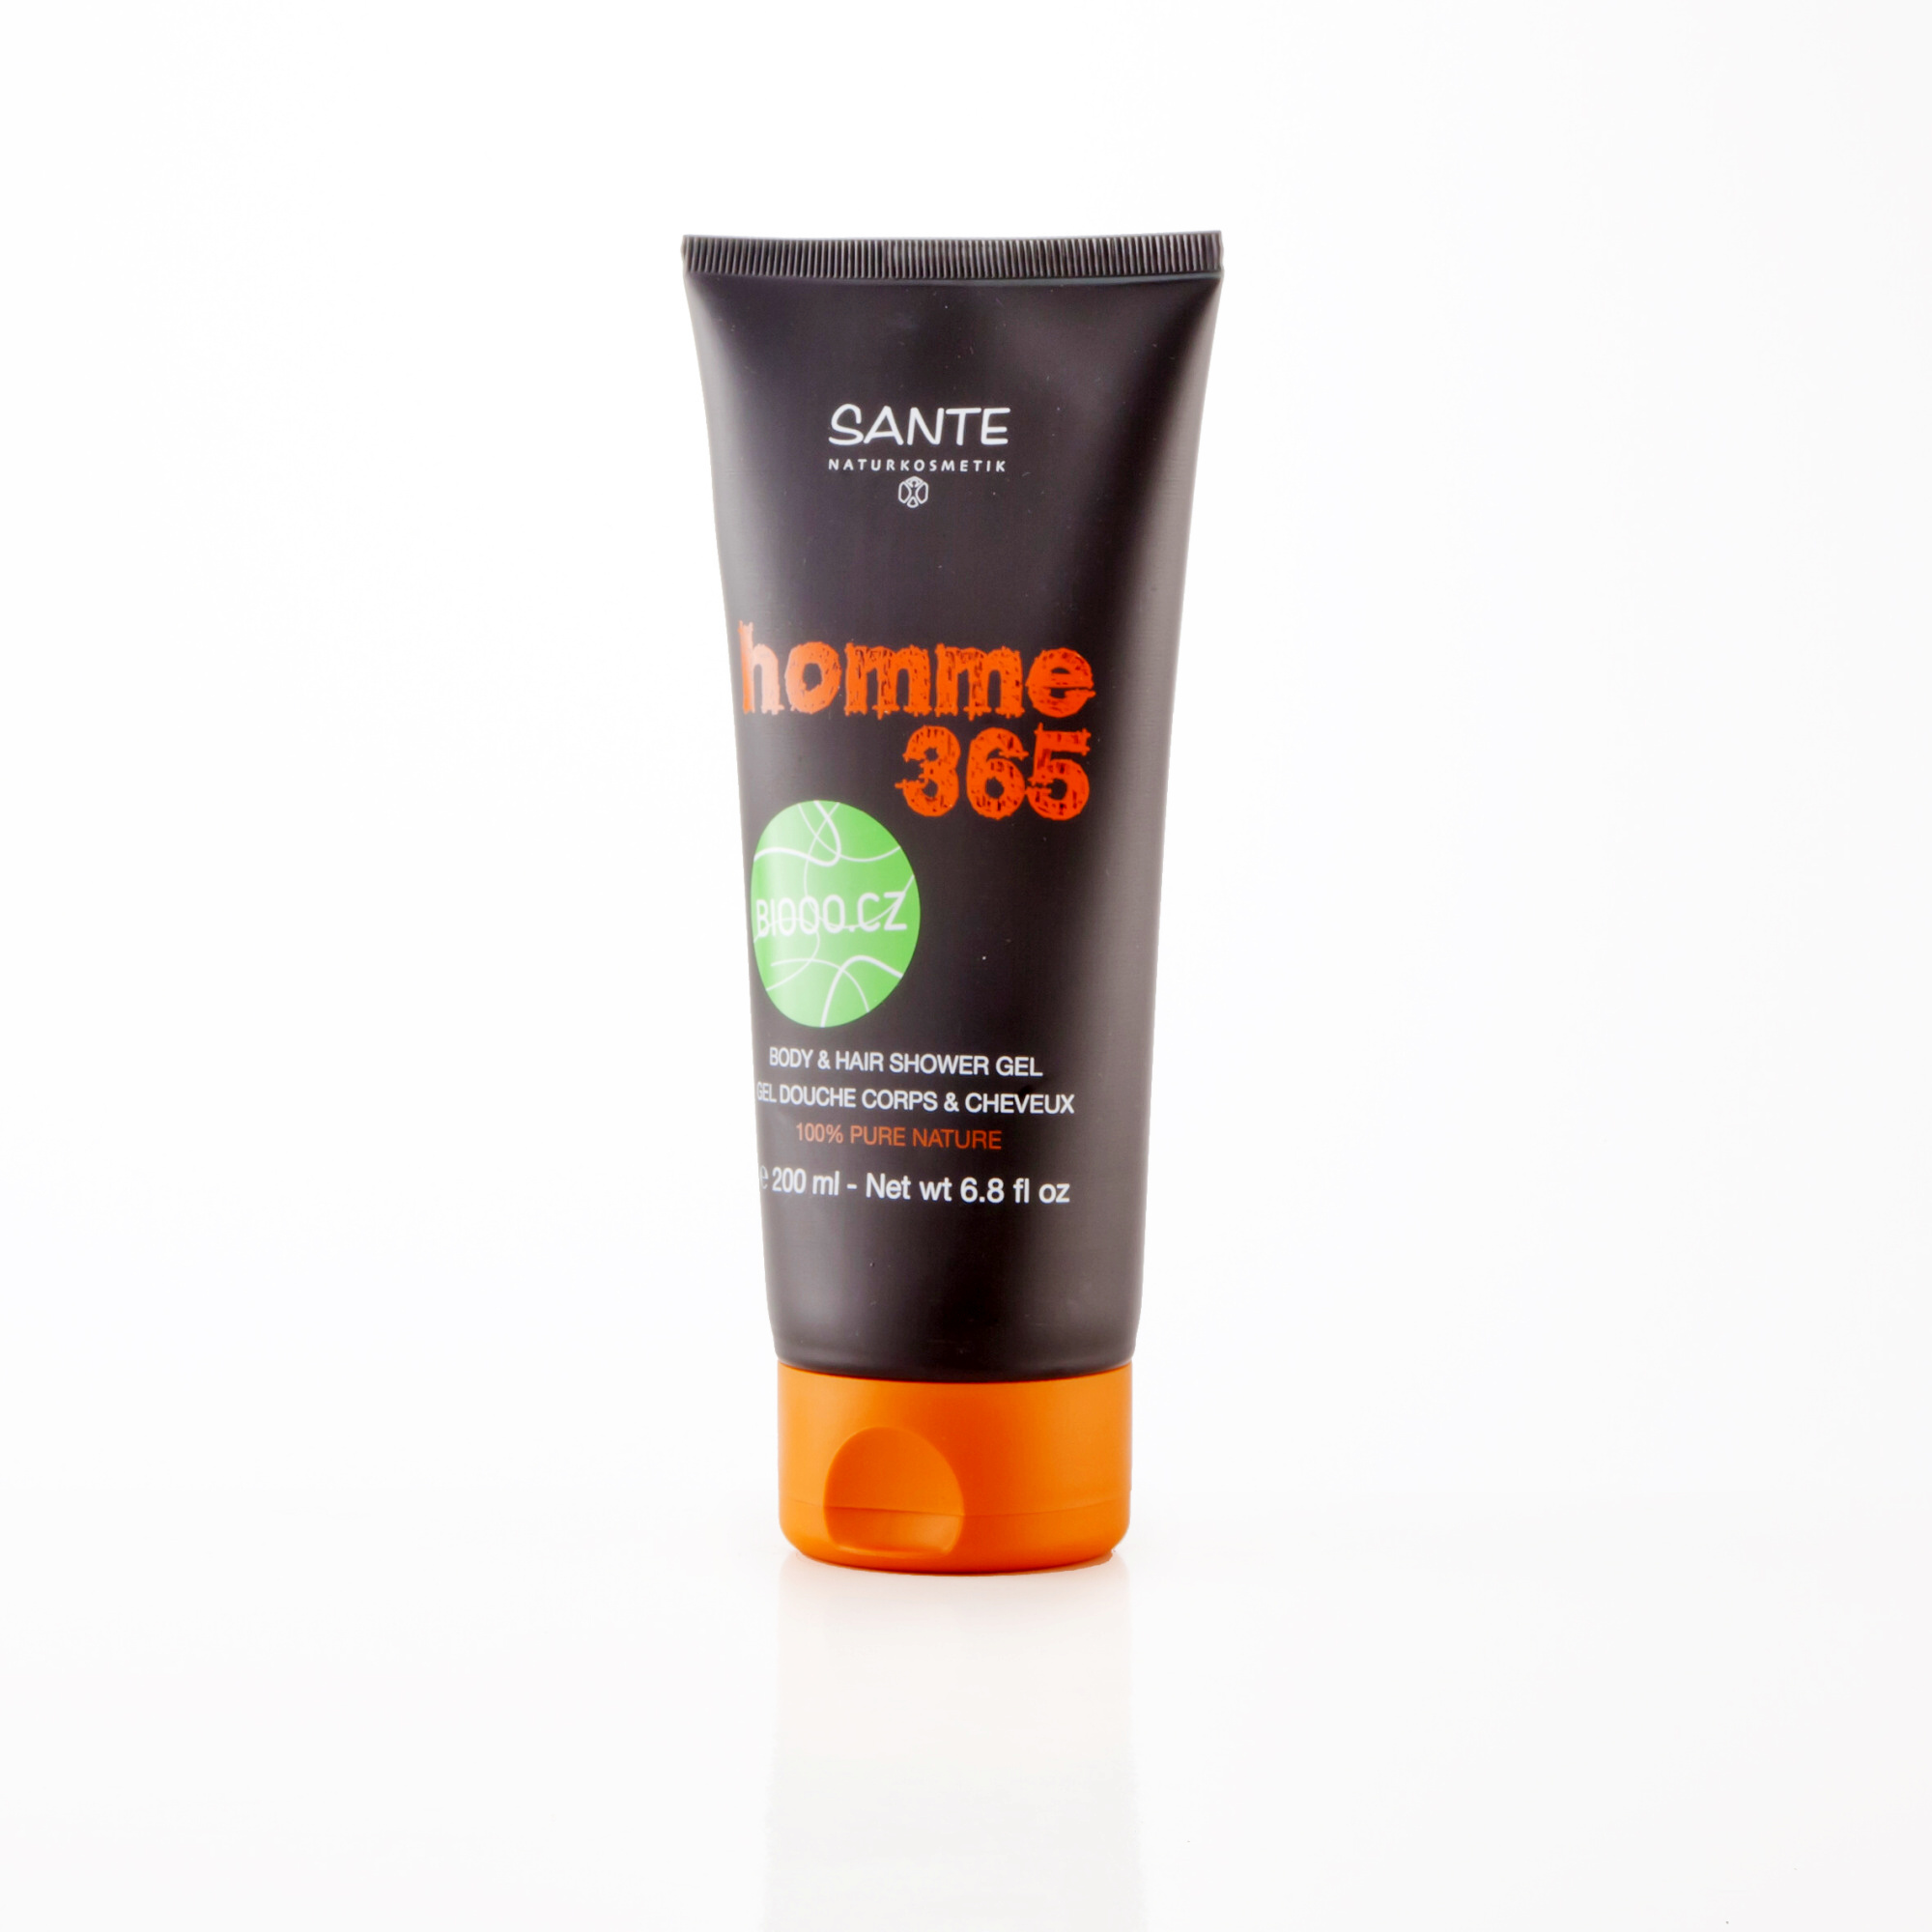 SANTE Šampon a sprchový gel, Homme 365 200 ml